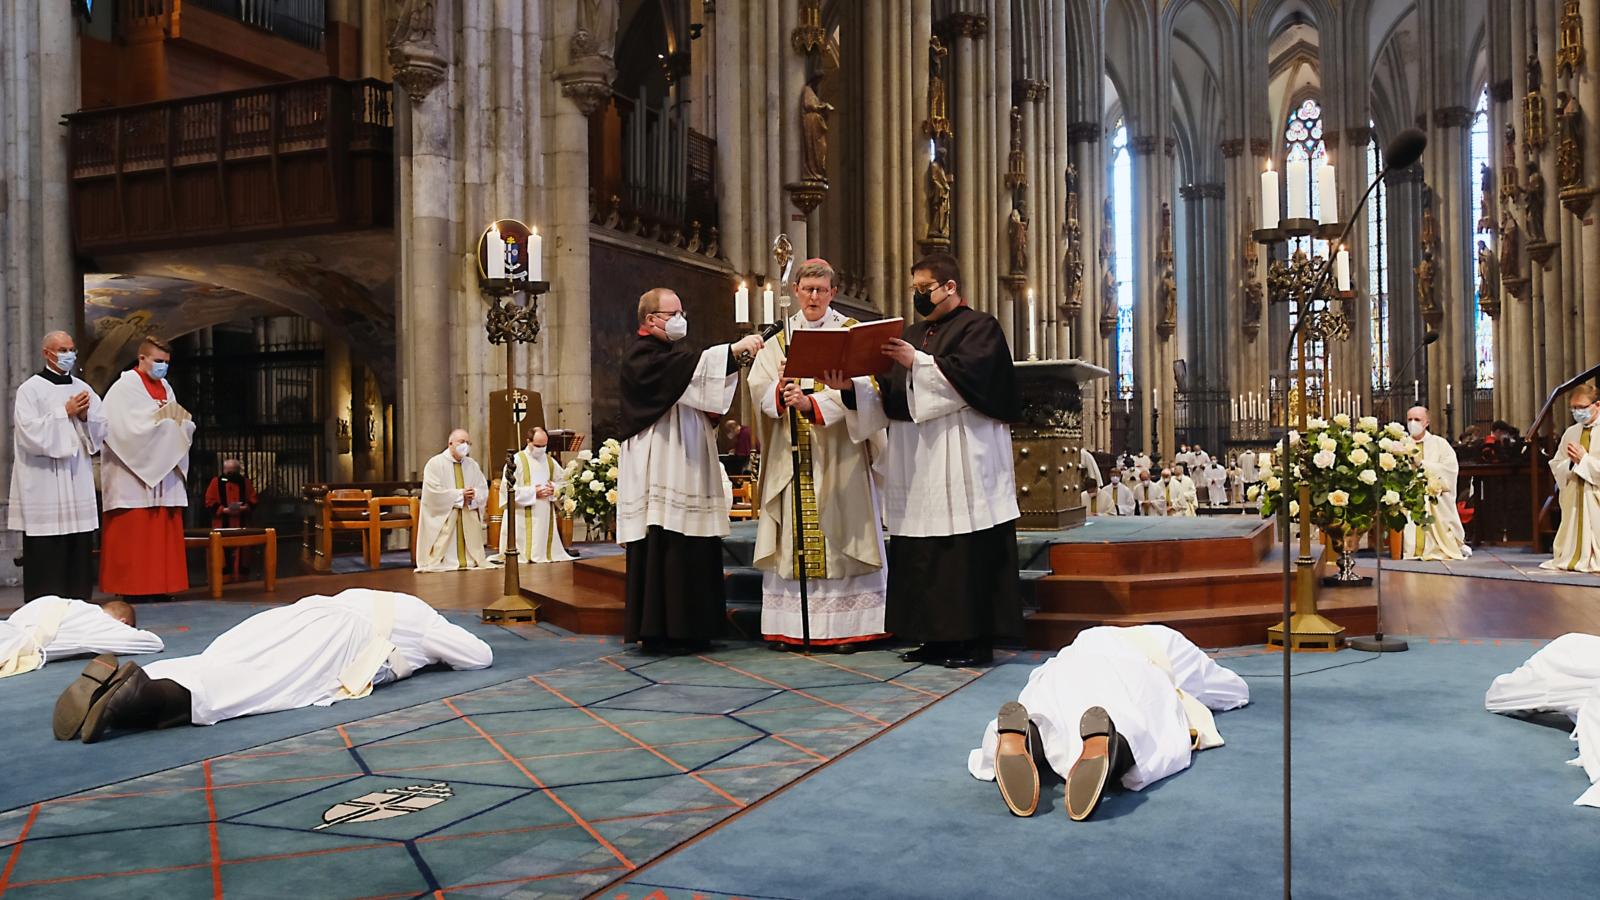 Am Herz-Jesu-Fest am 11. Juni 2021 hat Erzbischof Rainer Maria Kardinal Woelki im Kölner Dom vier Männer zu Priestern geweiht.